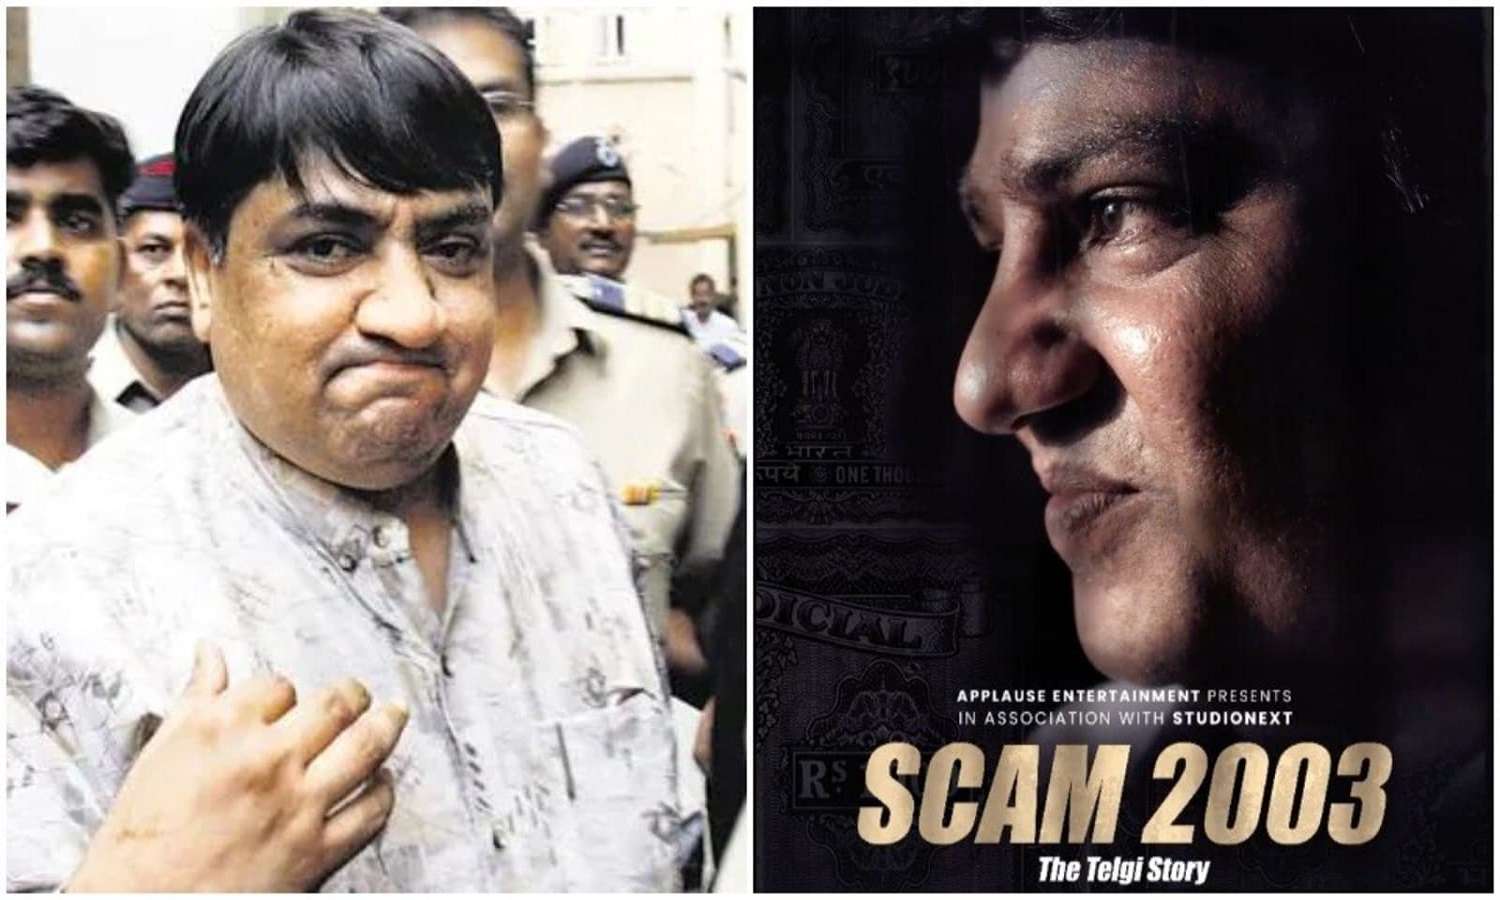 Scam 2003- The Telgi Story: 30 हजार करोड़ रुपए के स्टाम्प घोटाले पर बेस्ड है, हंसल मेहता की स्कैम 2003